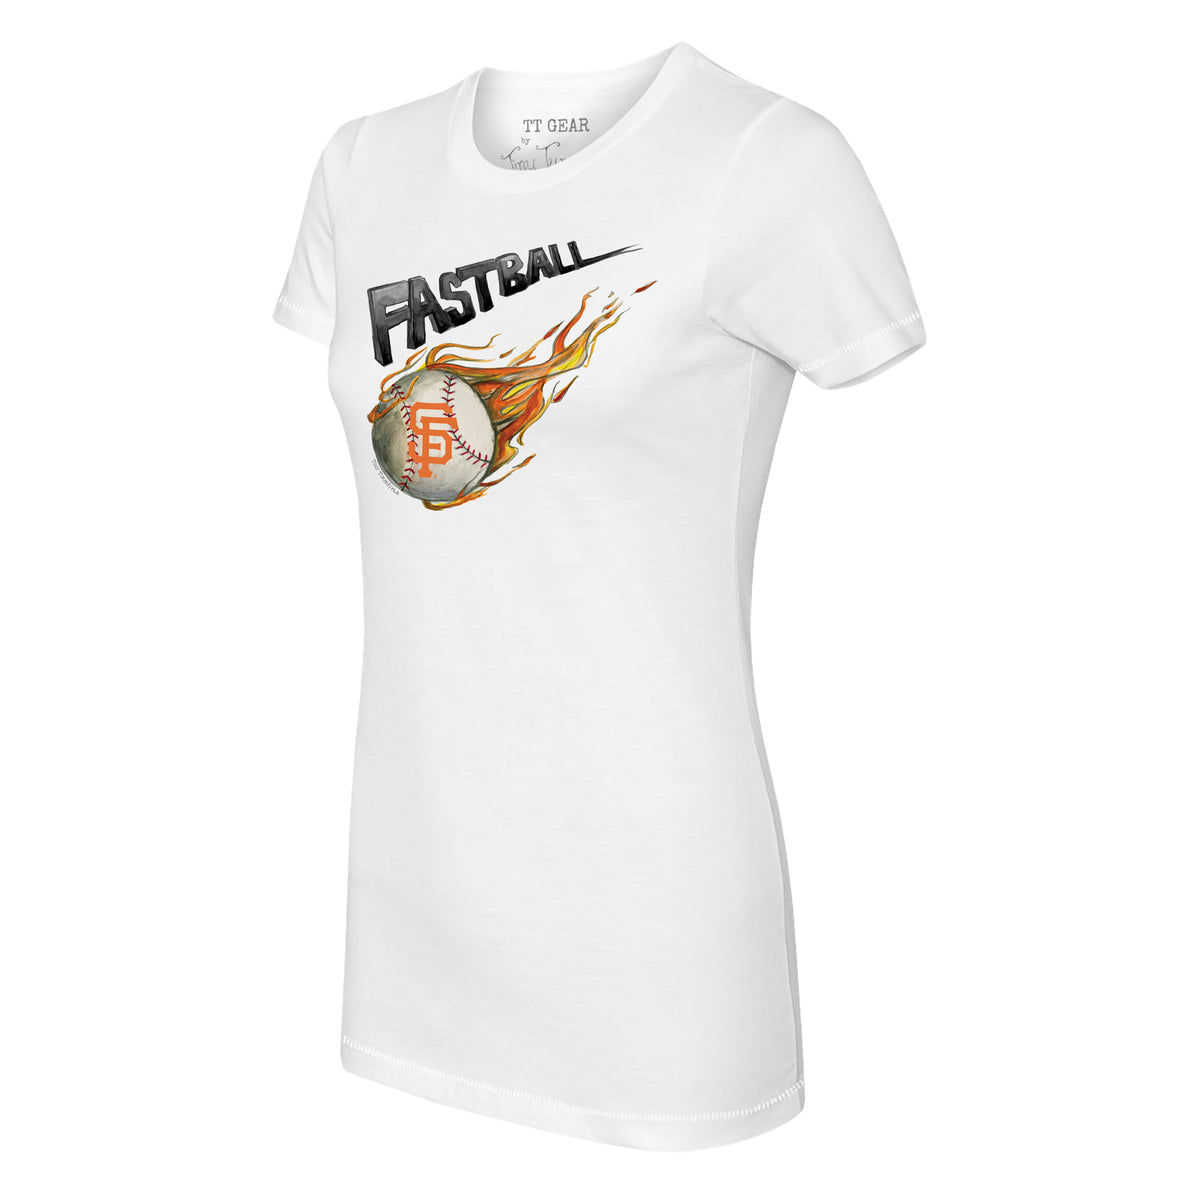 San Francisco Giants Fastball Tee Shirt